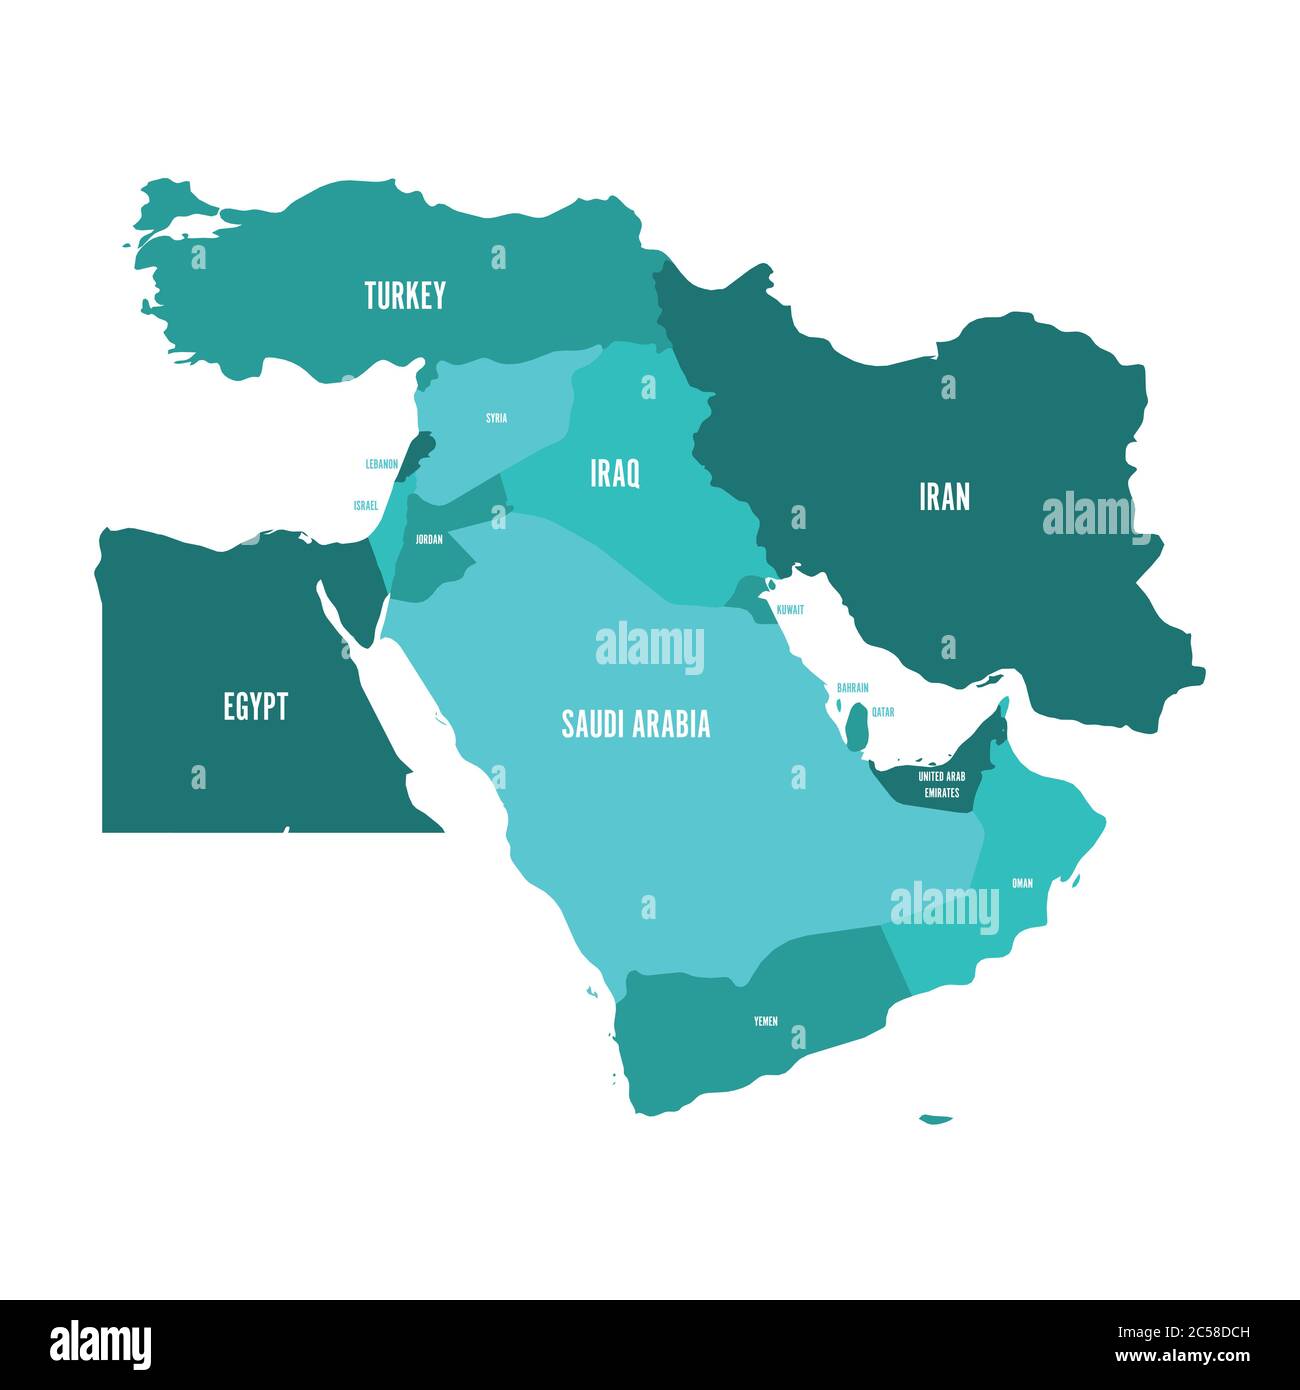 Karte des Nahen Ostens oder des Nahen Ostens in türkisblauen Farbtönen. Einfache flache Vektorilustration. Stock Vektor